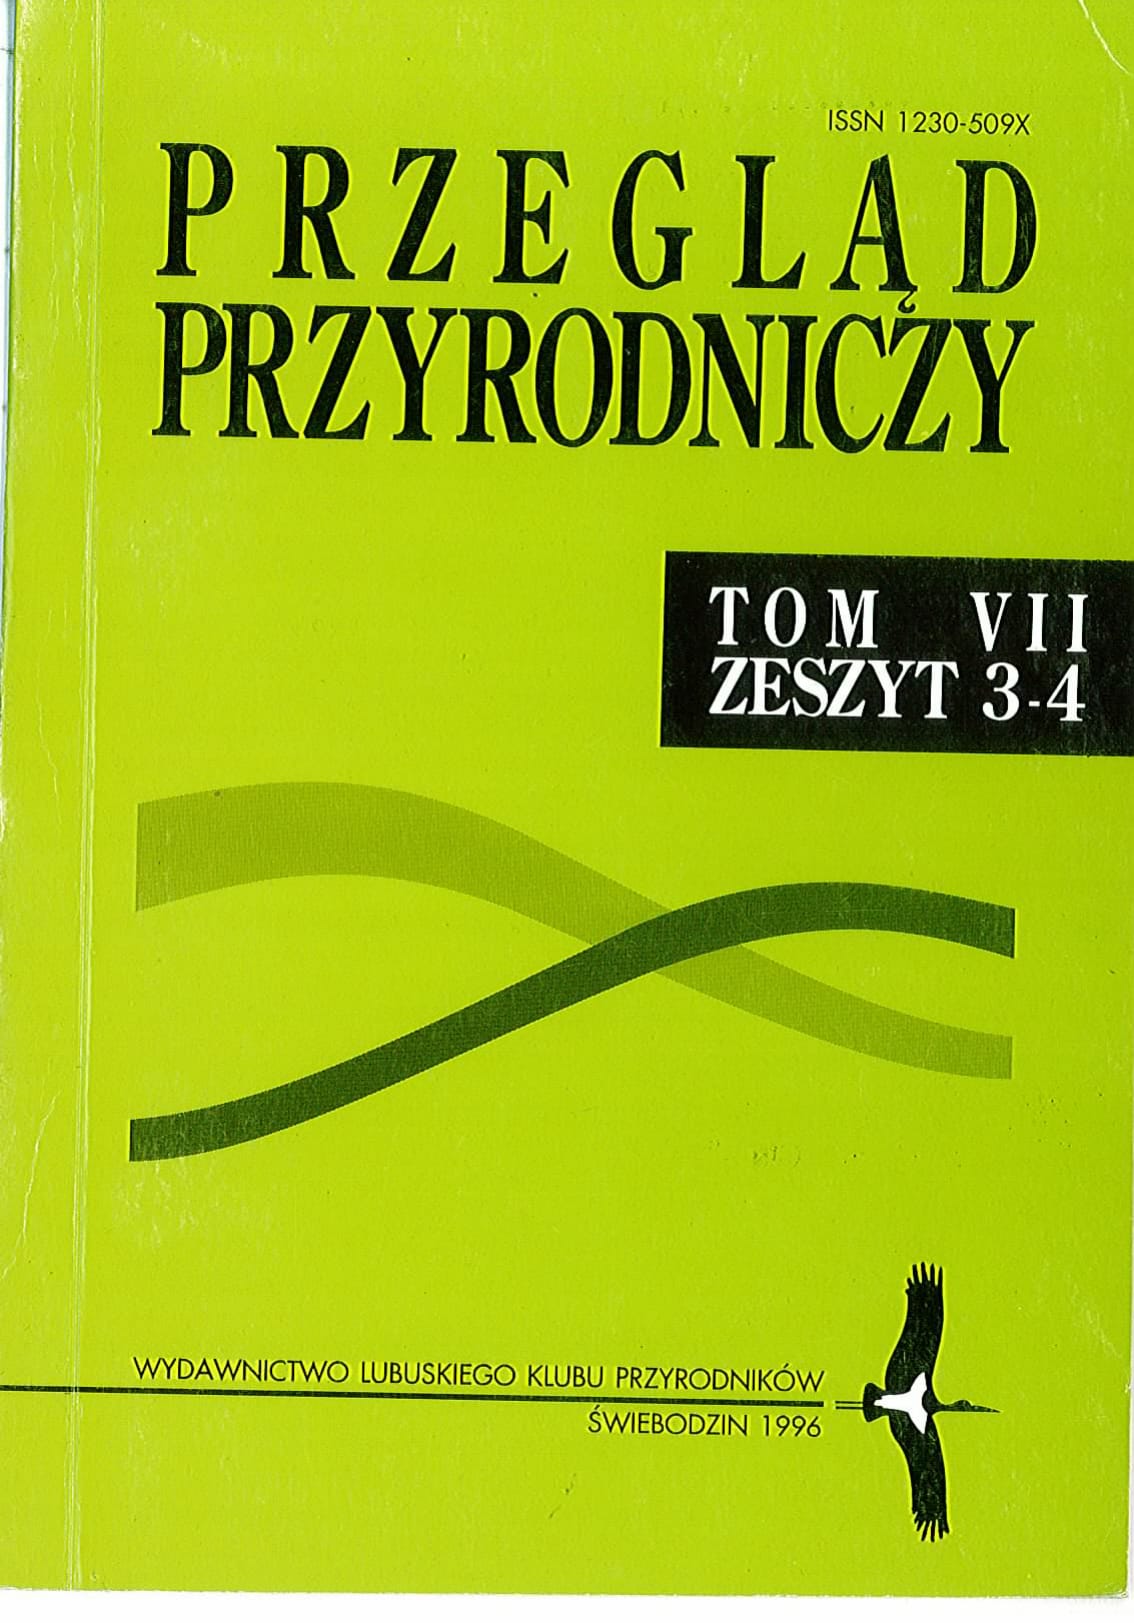 PP T.7 Z.3 4 1996 1